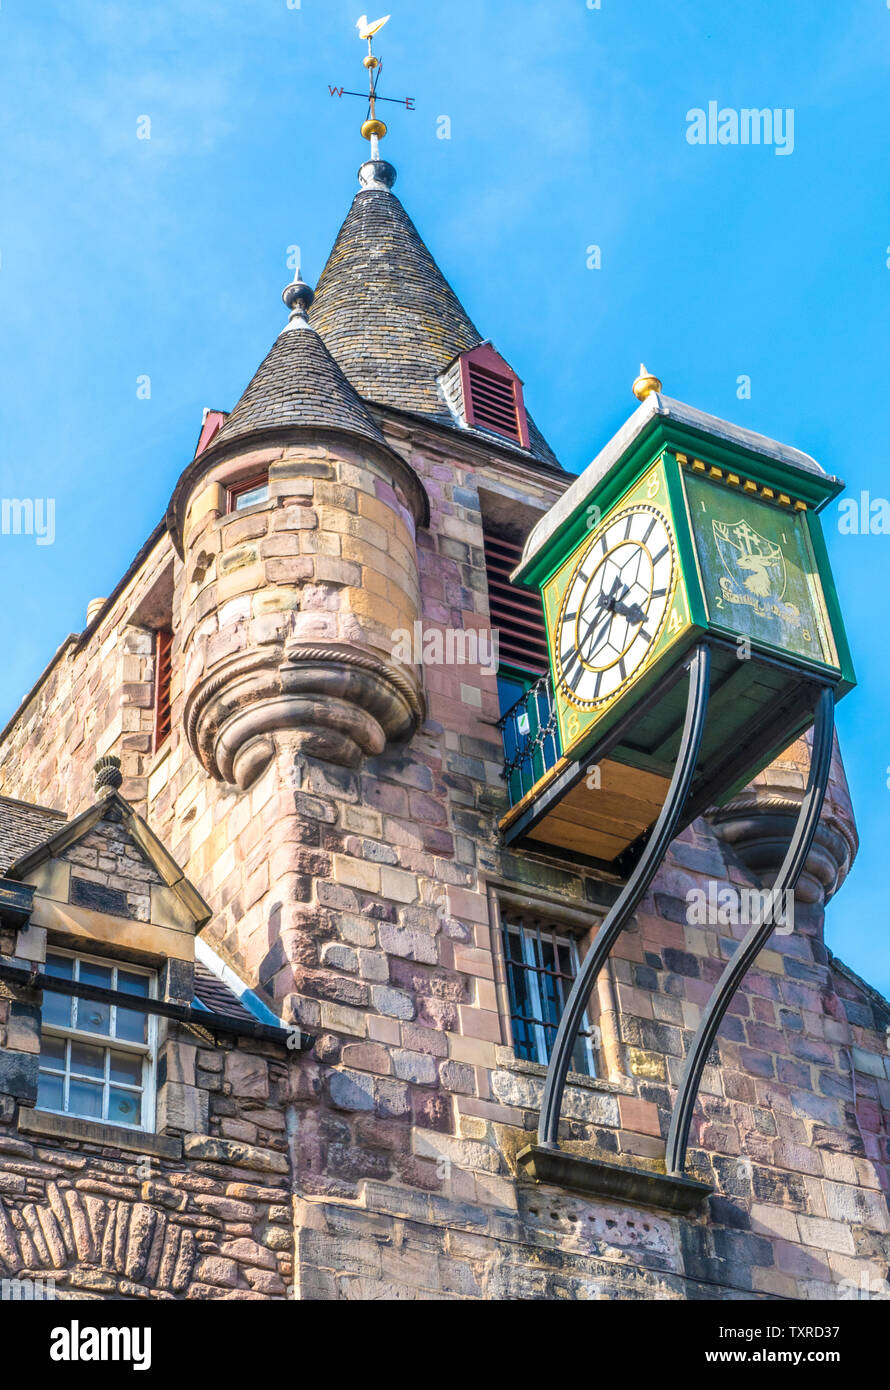 Canongate Mautstelle Wecker und Tower - Teil eines historischen Wahrzeichen, im Jahr 1591 als das Zentrum von Verwaltung und Justiz. Edinburgh, Schottland, Großbritannien. Stockfoto